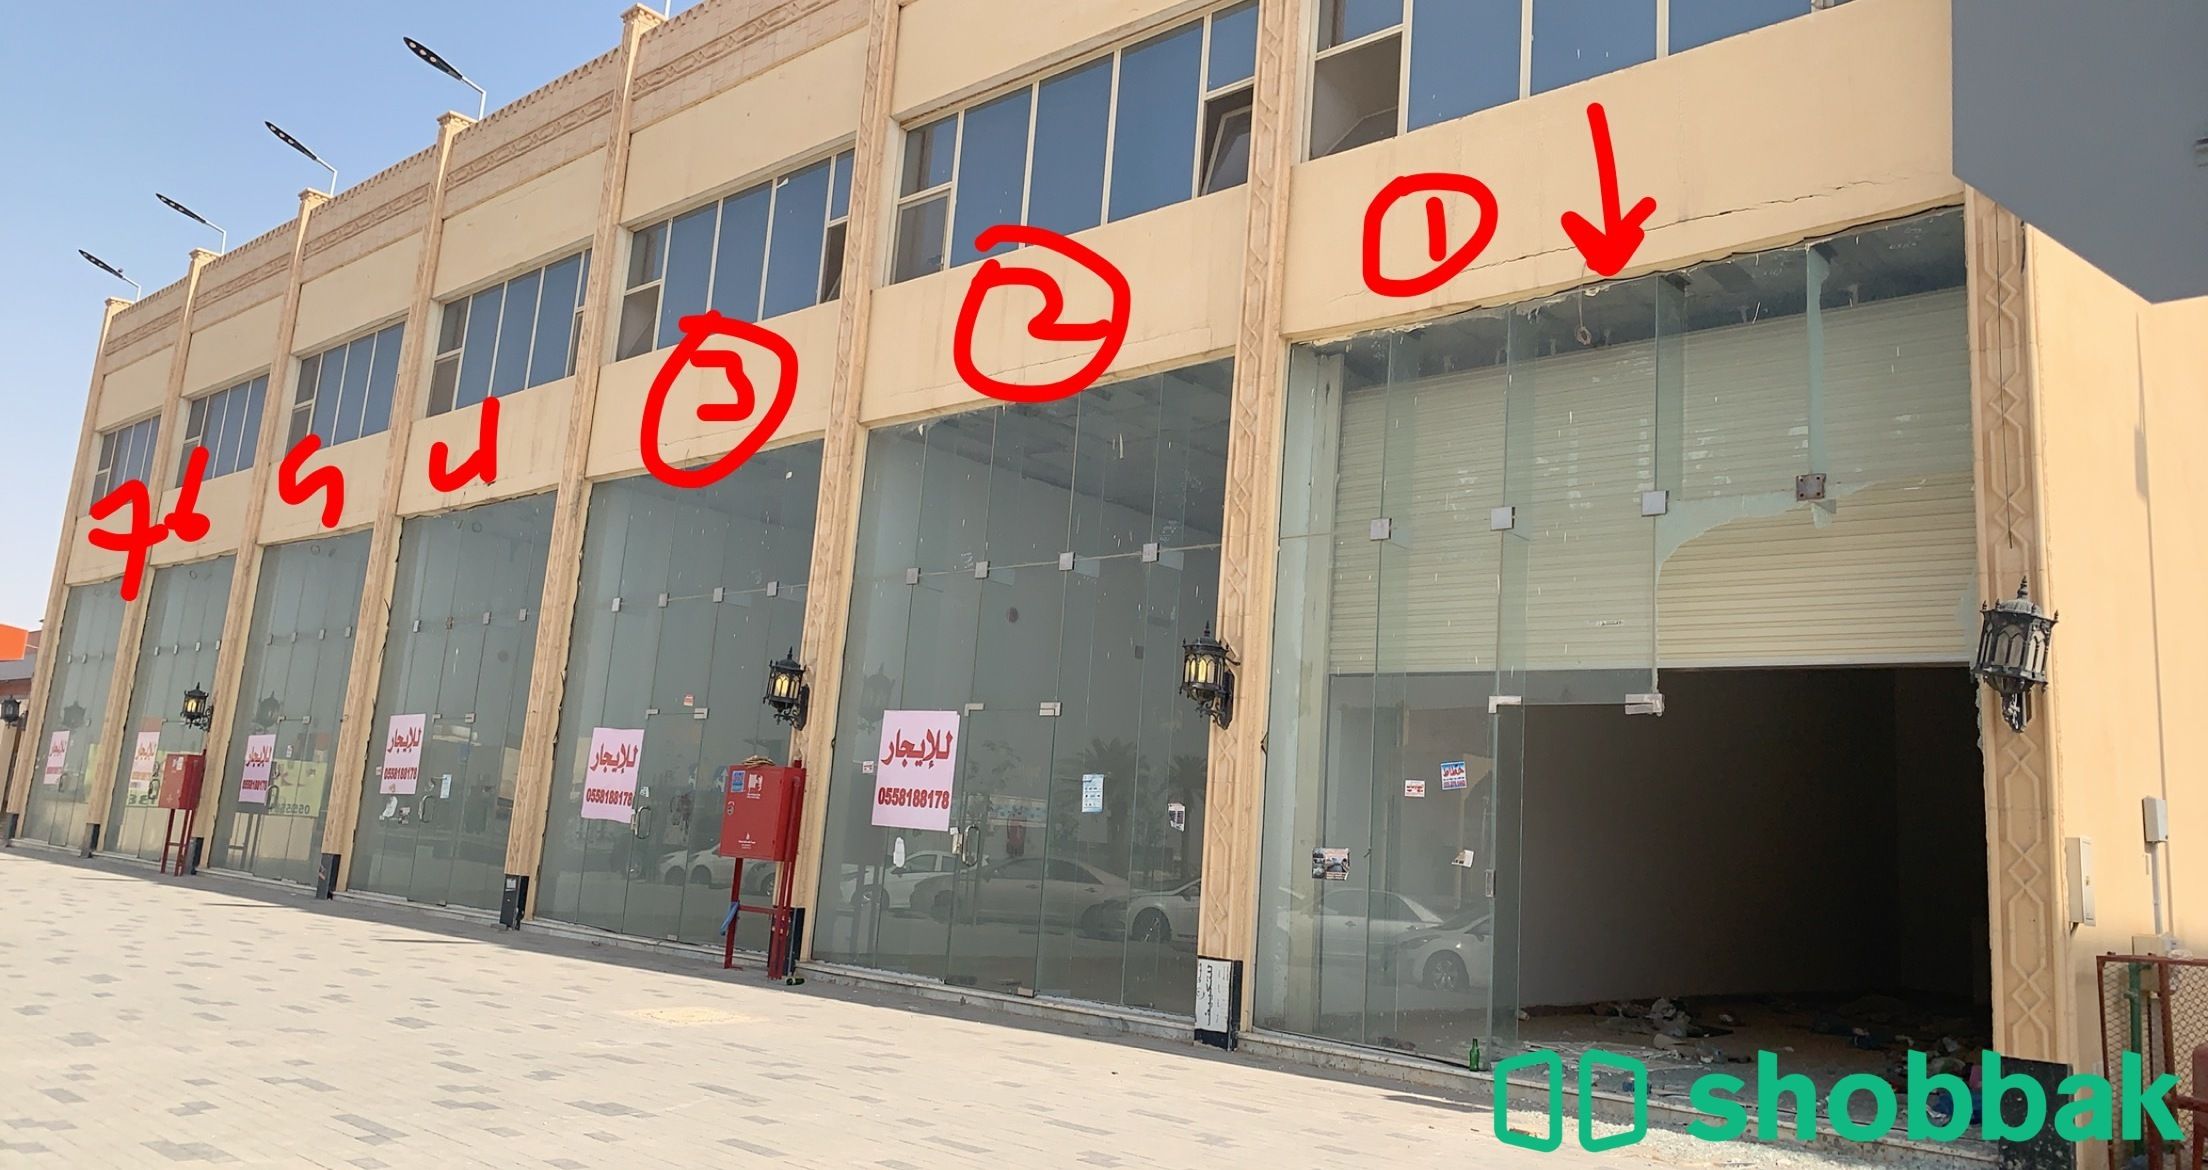 محل للايجار رقم 2 في ظهرة لبن  Shobbak Saudi Arabia